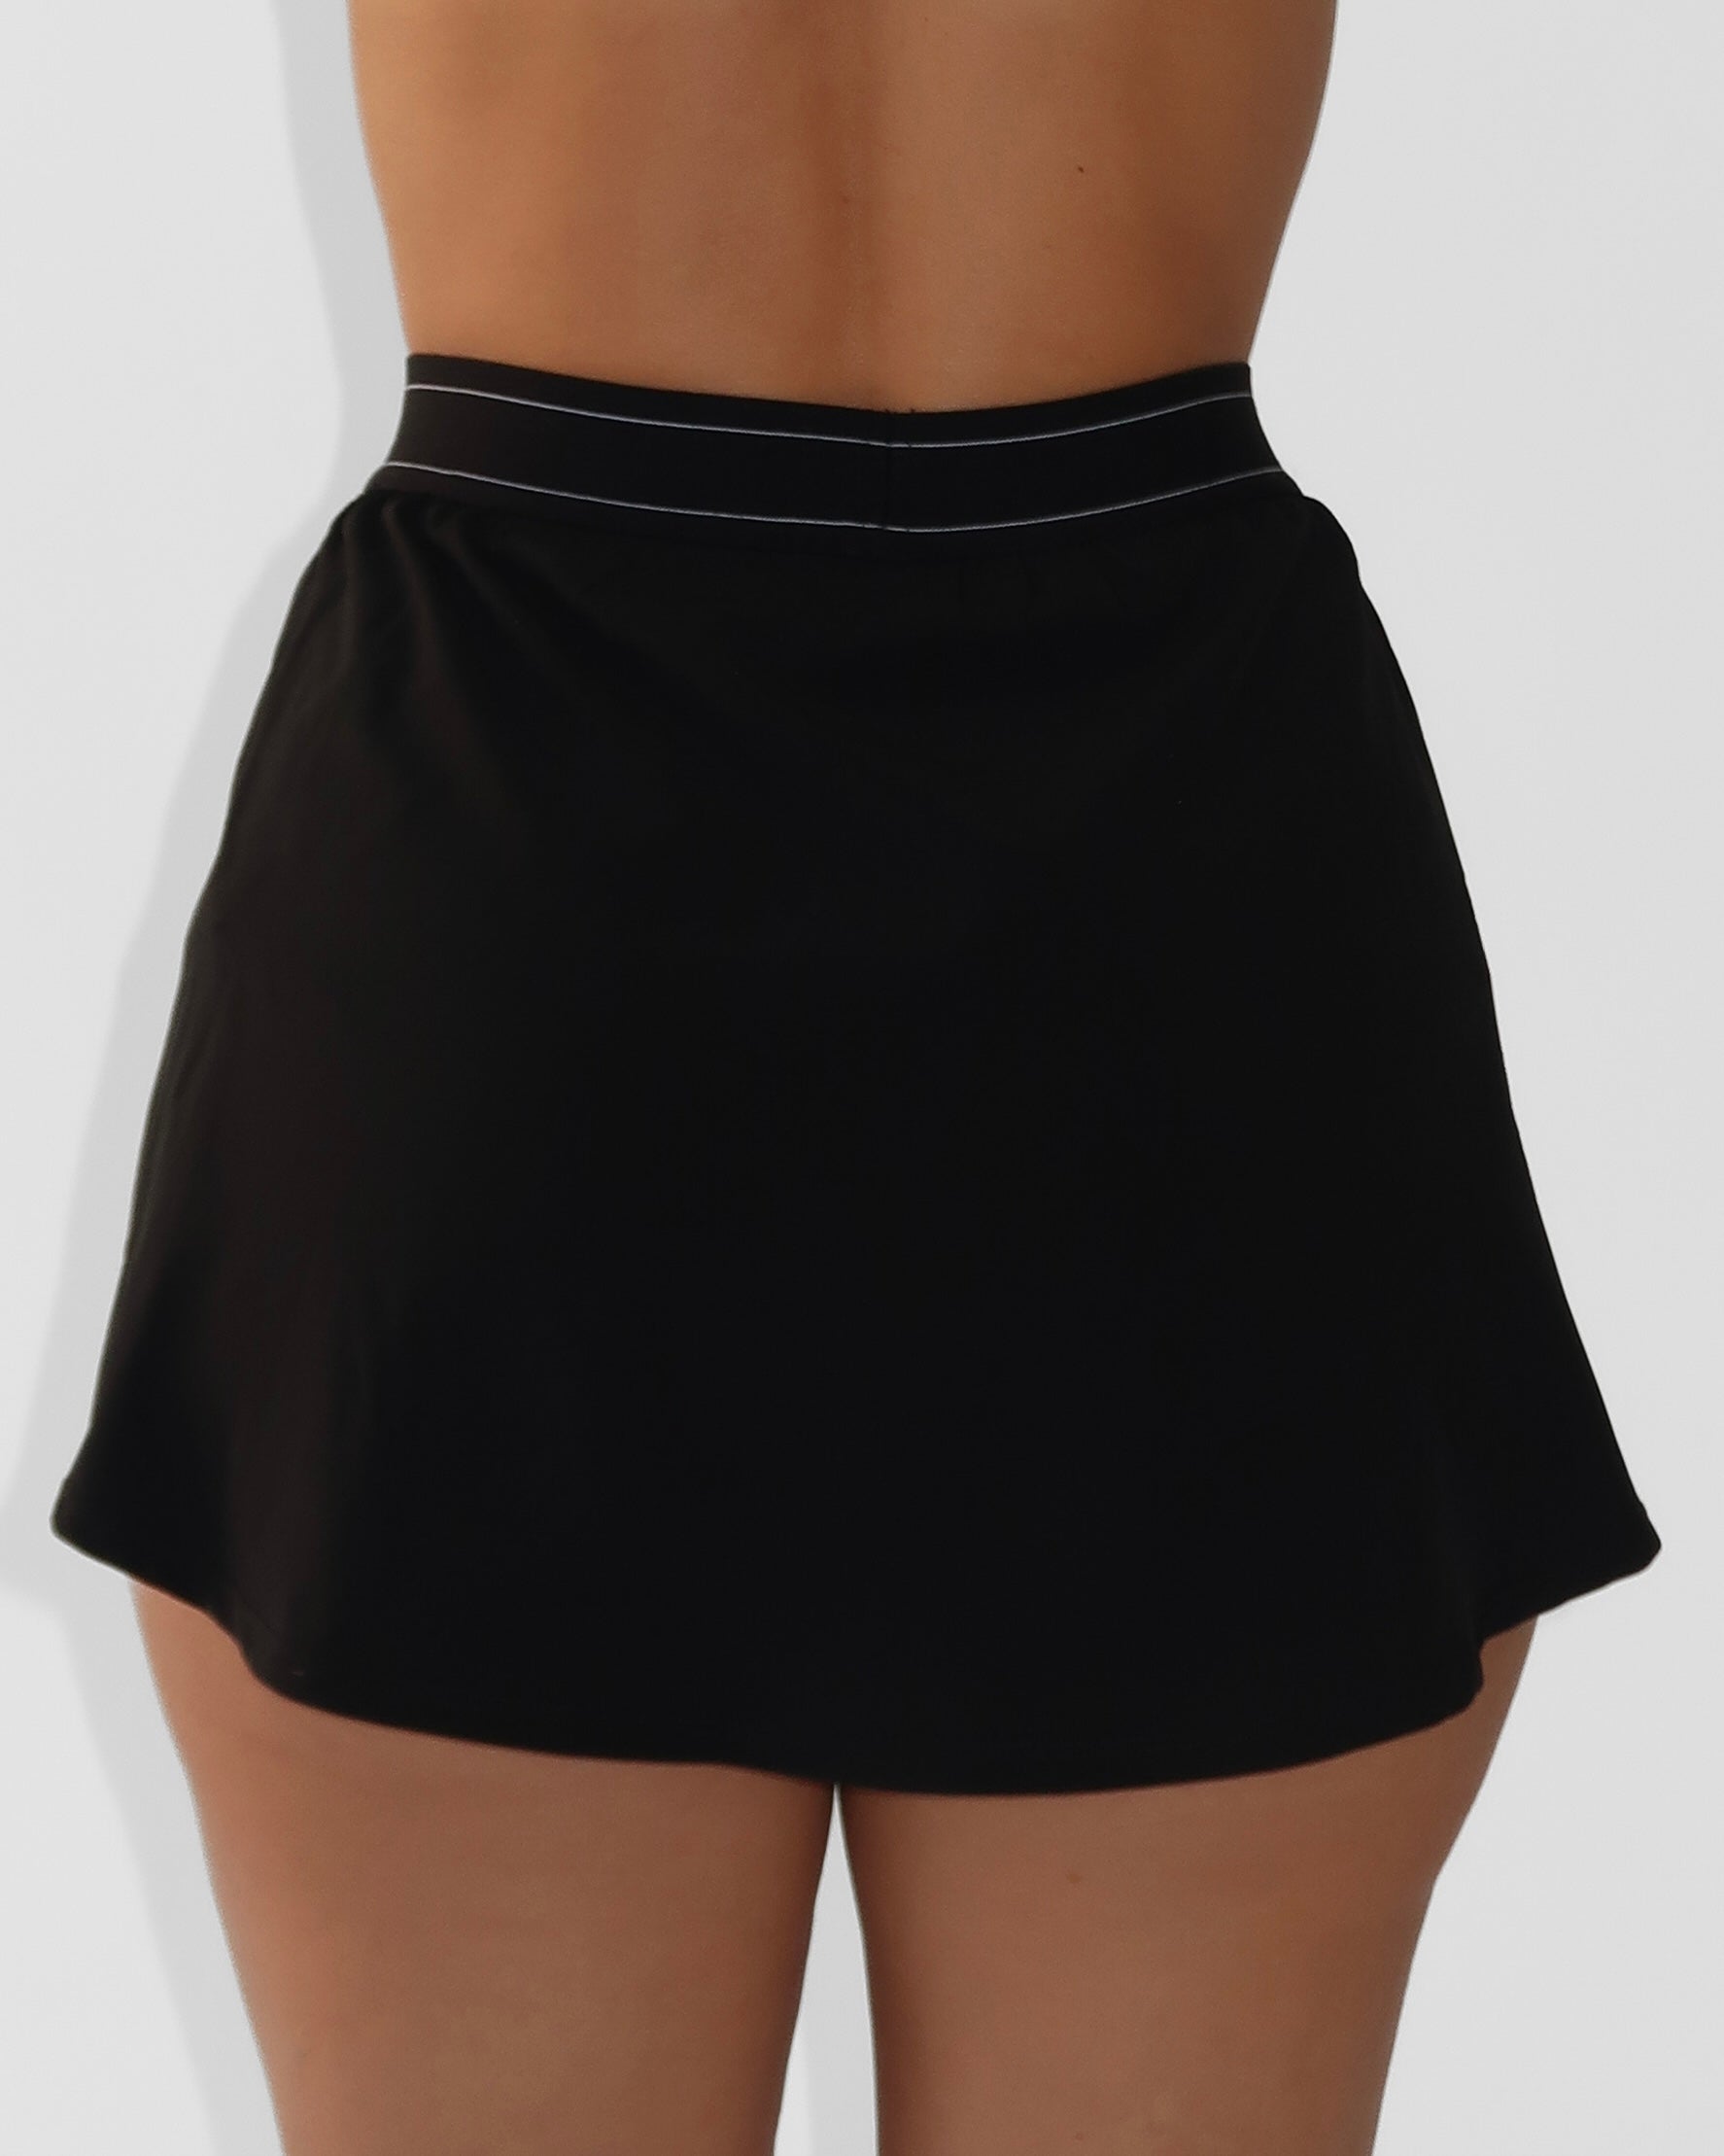 Serenity Skirt - Black